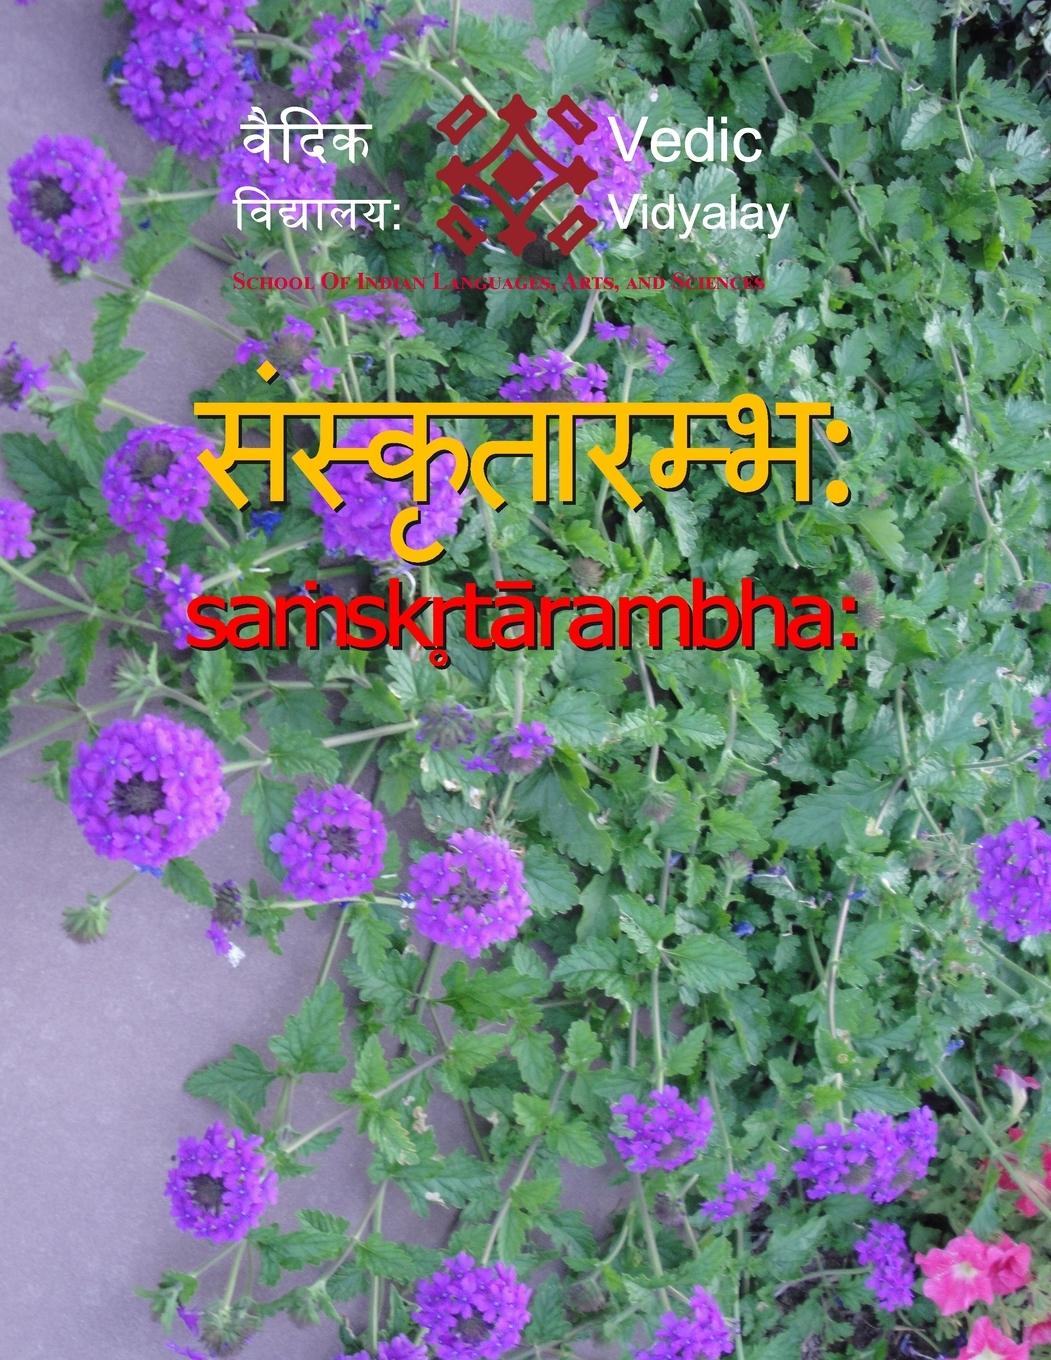 Book Samskrutarambh - A beginner book for learning Sanskrit 